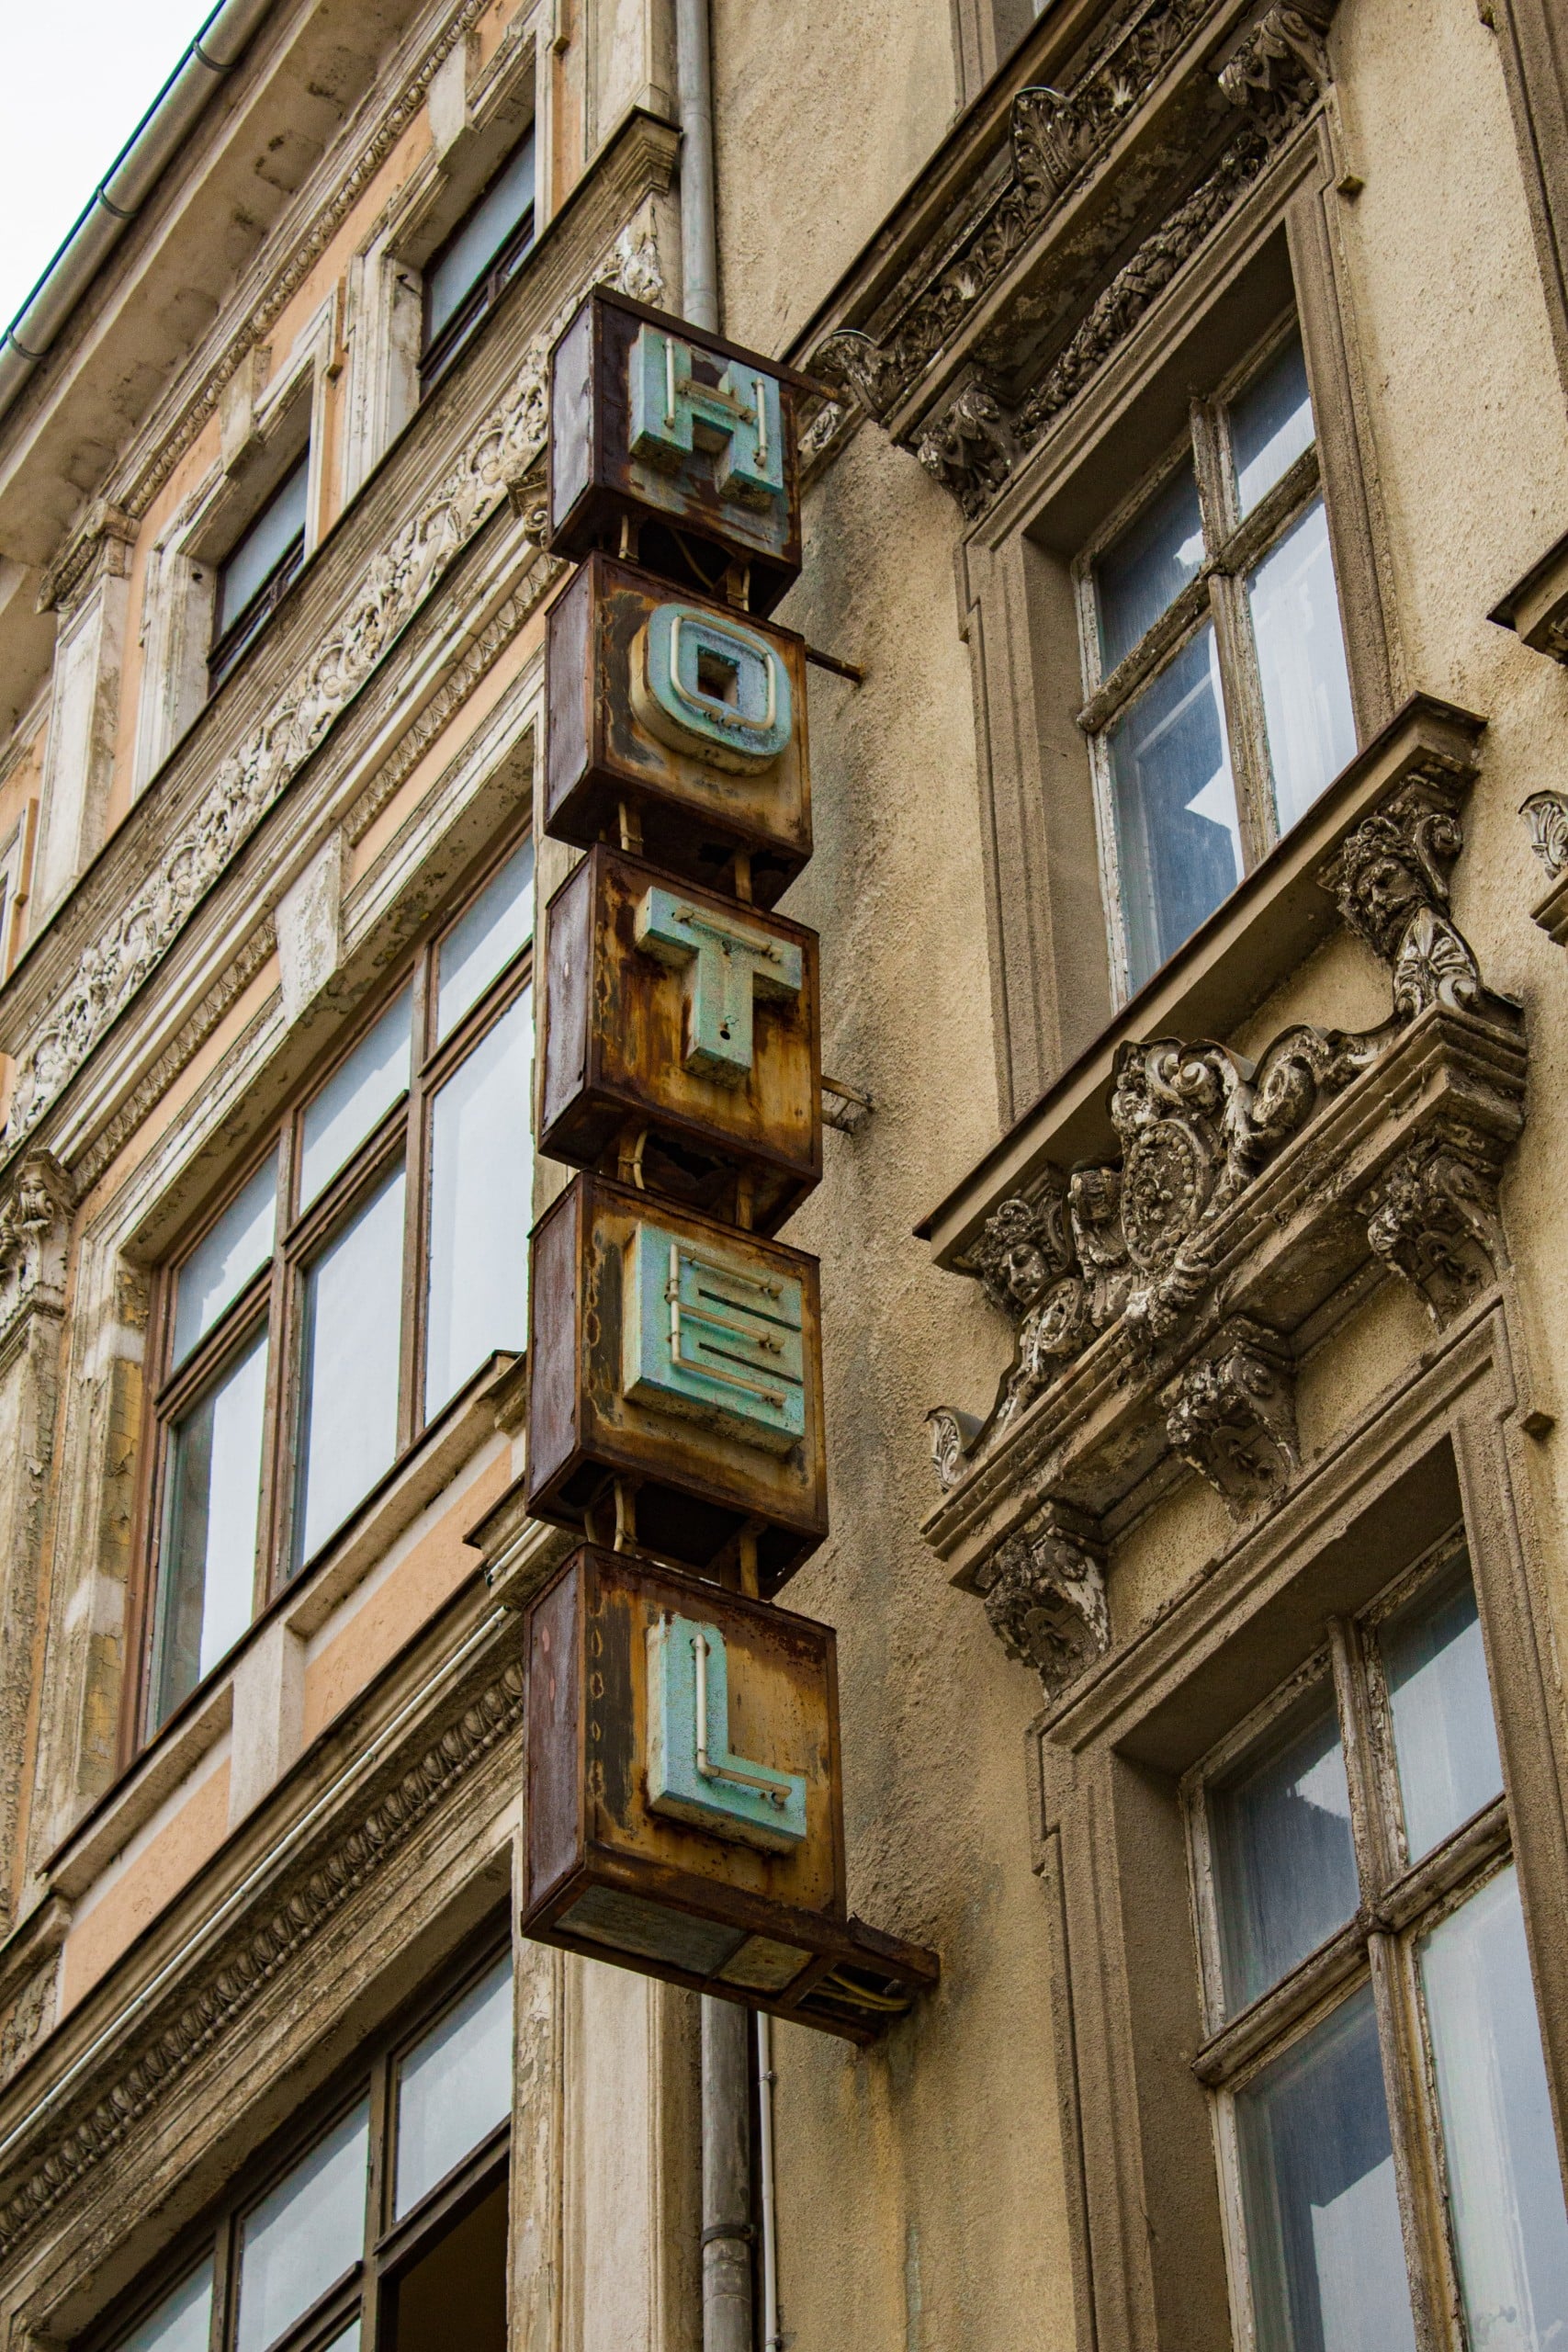 Vor einer Altbaufassade hängt eine Leuchtreklame mit der Schrift Hotel. Es wirkt heruntergekommen